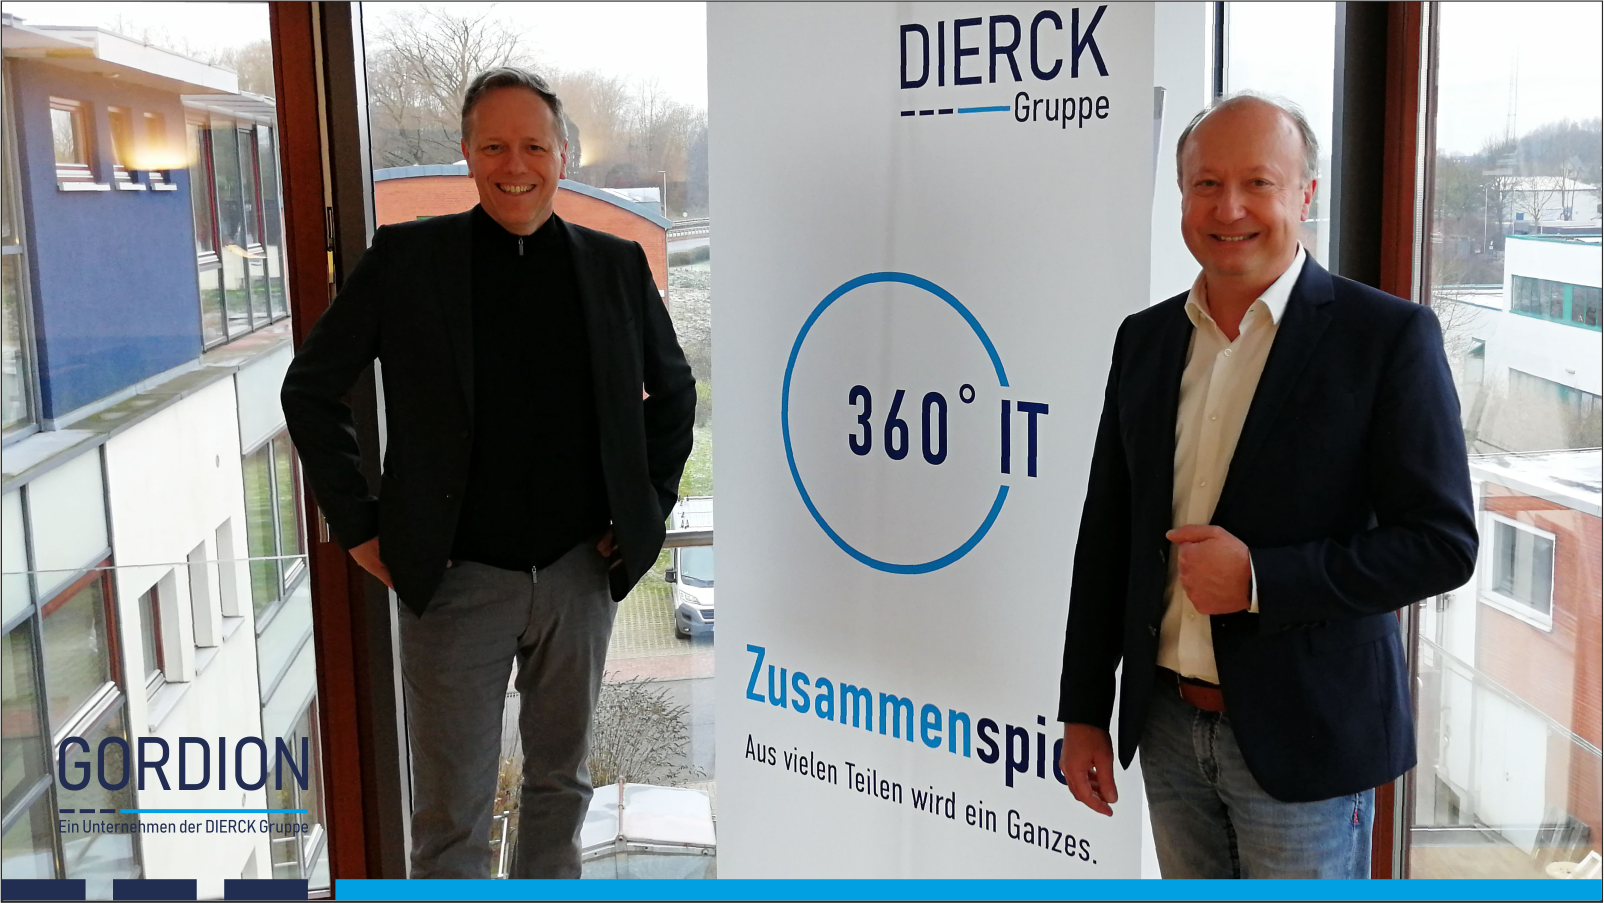 GORDION ist Teil der DIERCK GROUP. Wolfgang Ehrk (CEO DIERCK-GROUP) und Oliver Lindlar (MD GORDION, links) kennen sich seit 2007. Beide  sind seit 2008 u.a. auch in der IT-Union GmbH & Co. KG führend tätig.